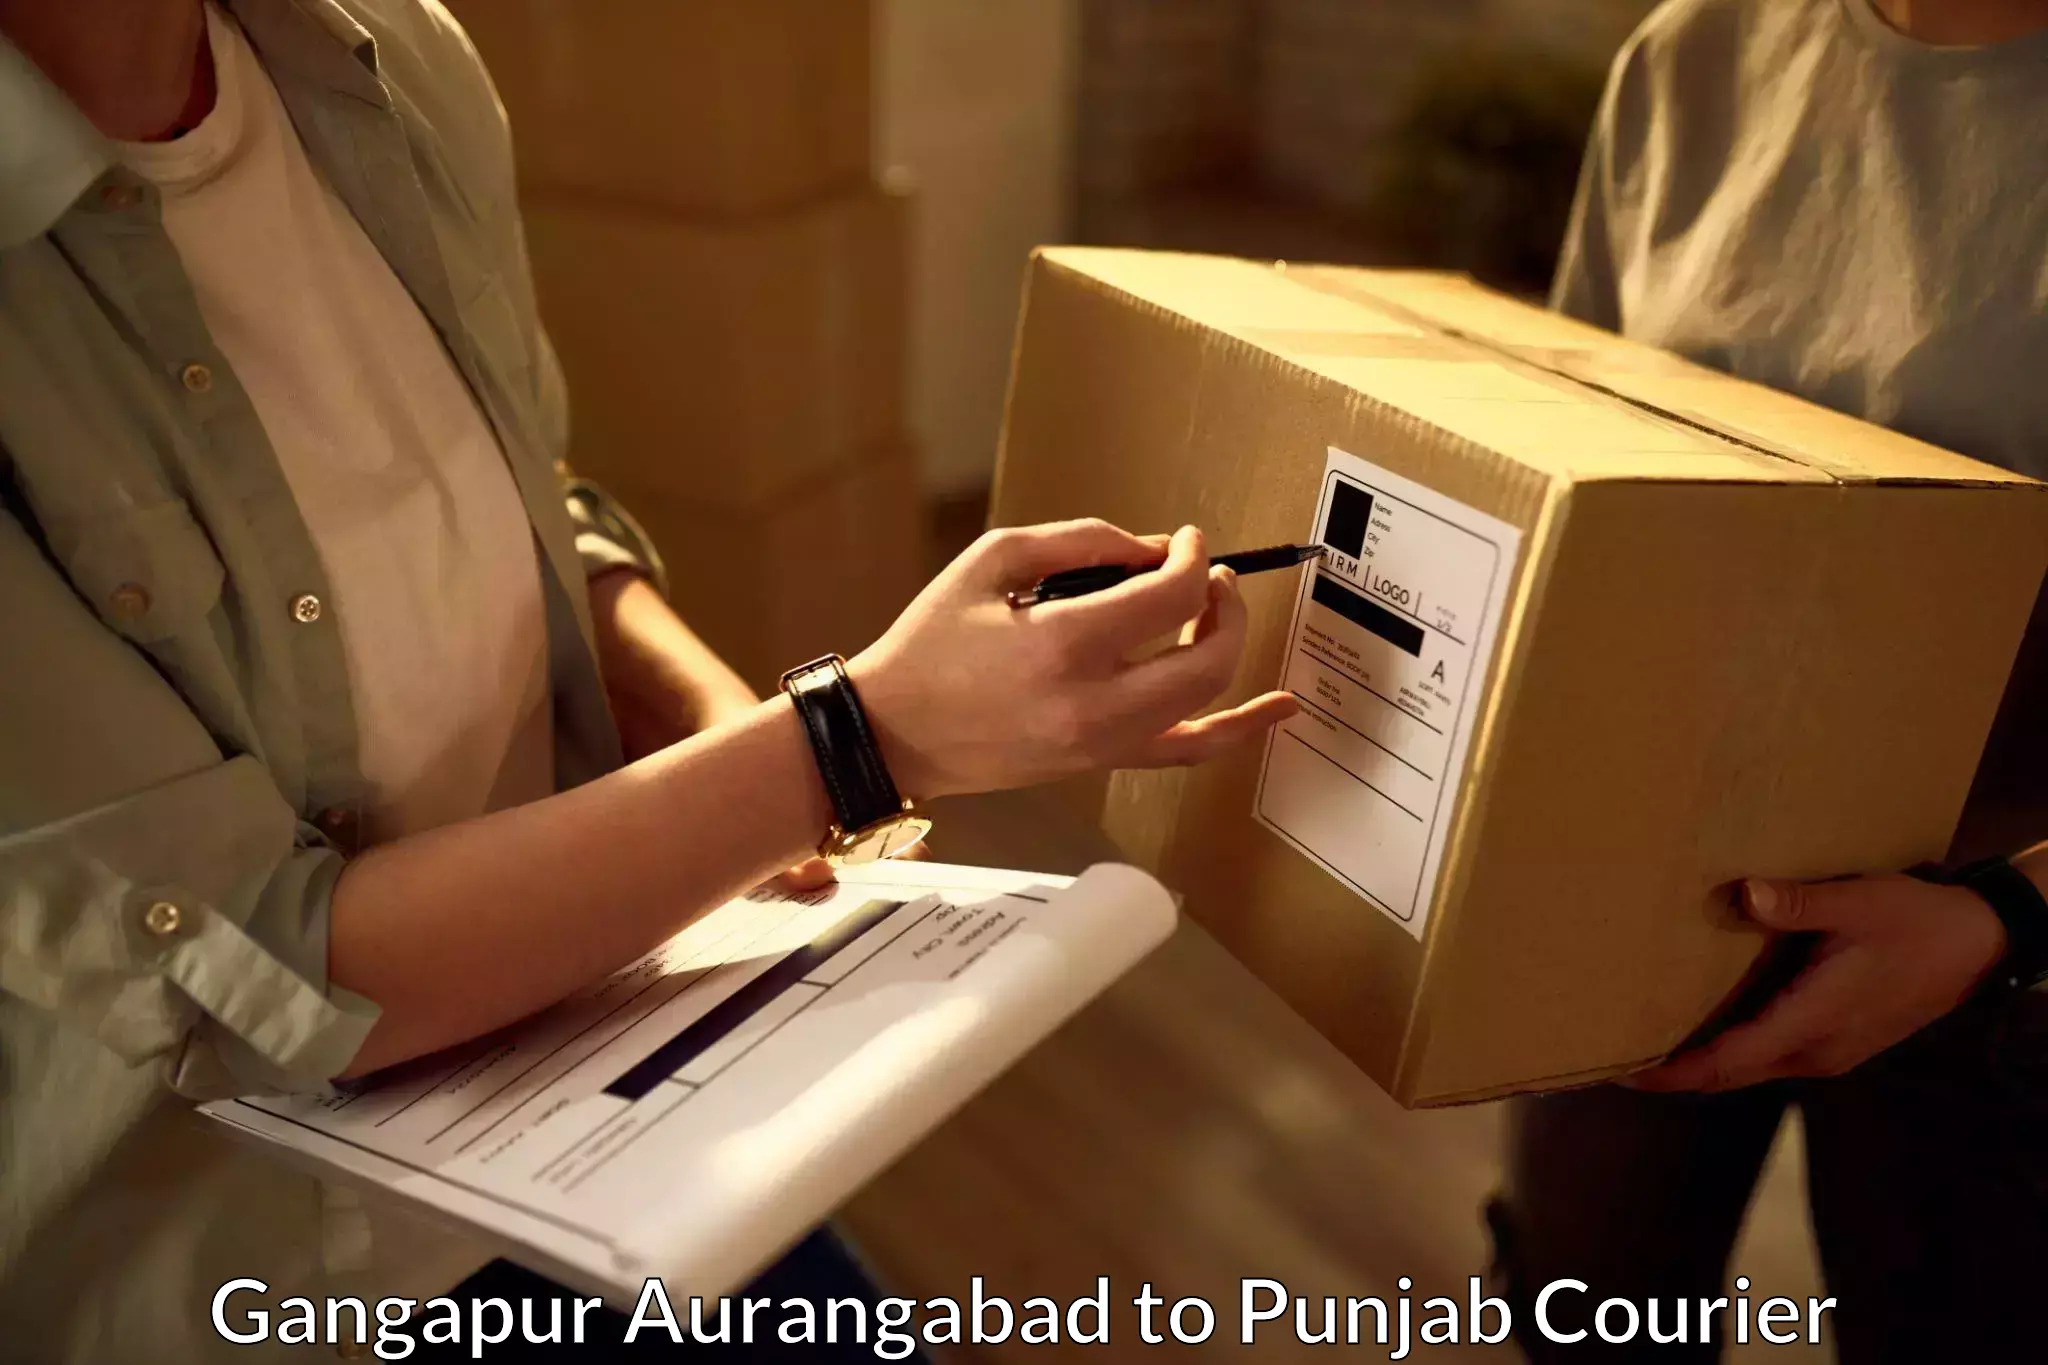 Reliable parcel services Gangapur Aurangabad to Dinanagar